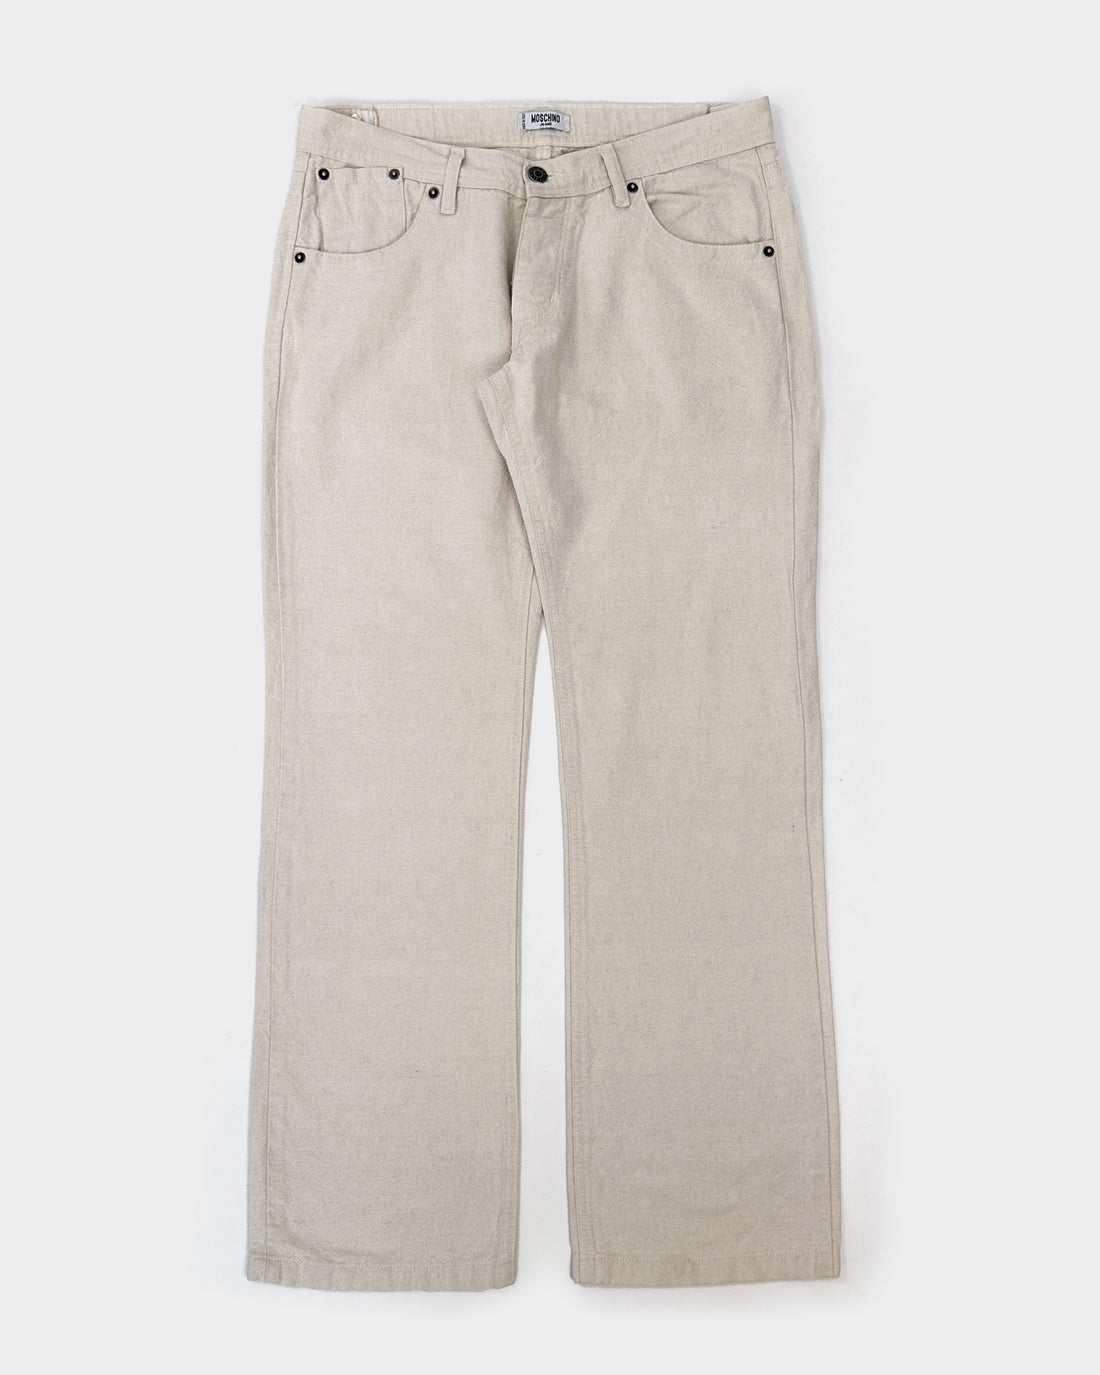 Moschino Hemp Style Cream White Pants 1990's